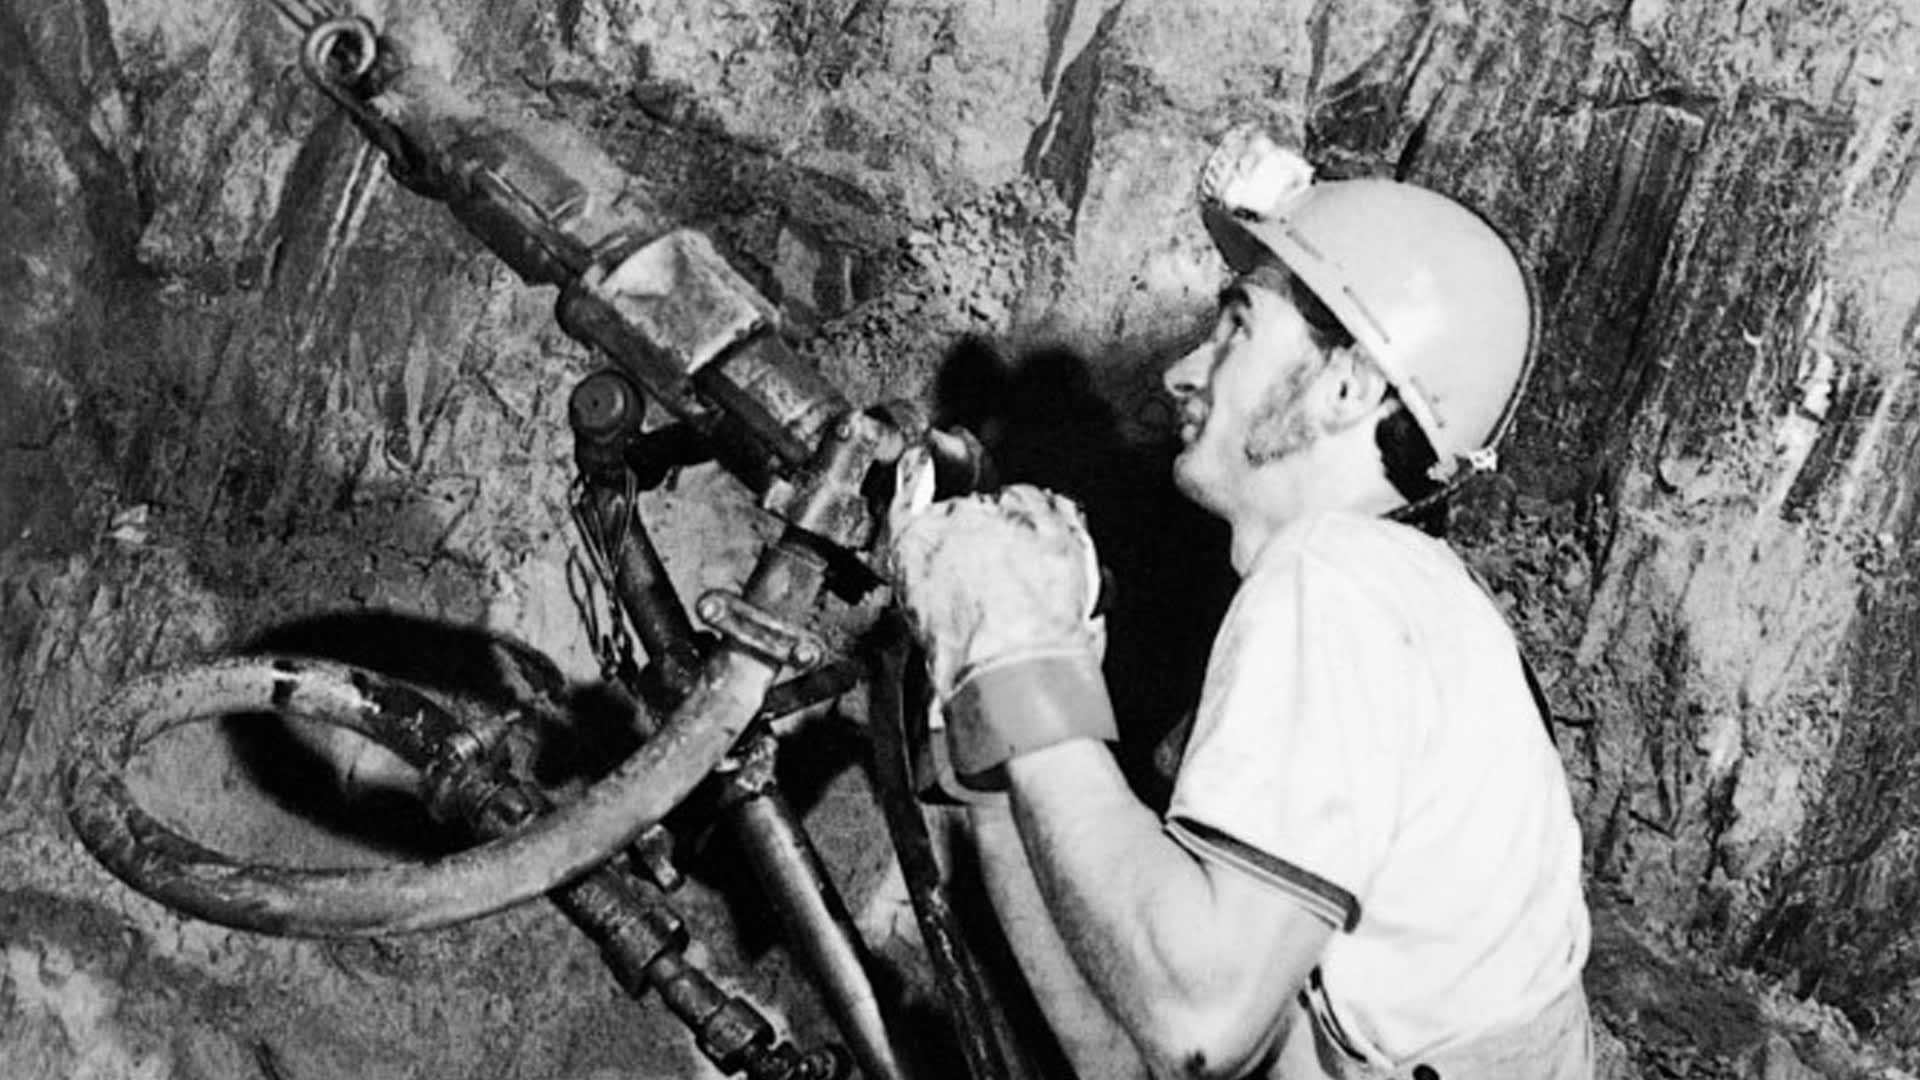 Vrtací práce v rudném hornictví, 70. léta 20. století